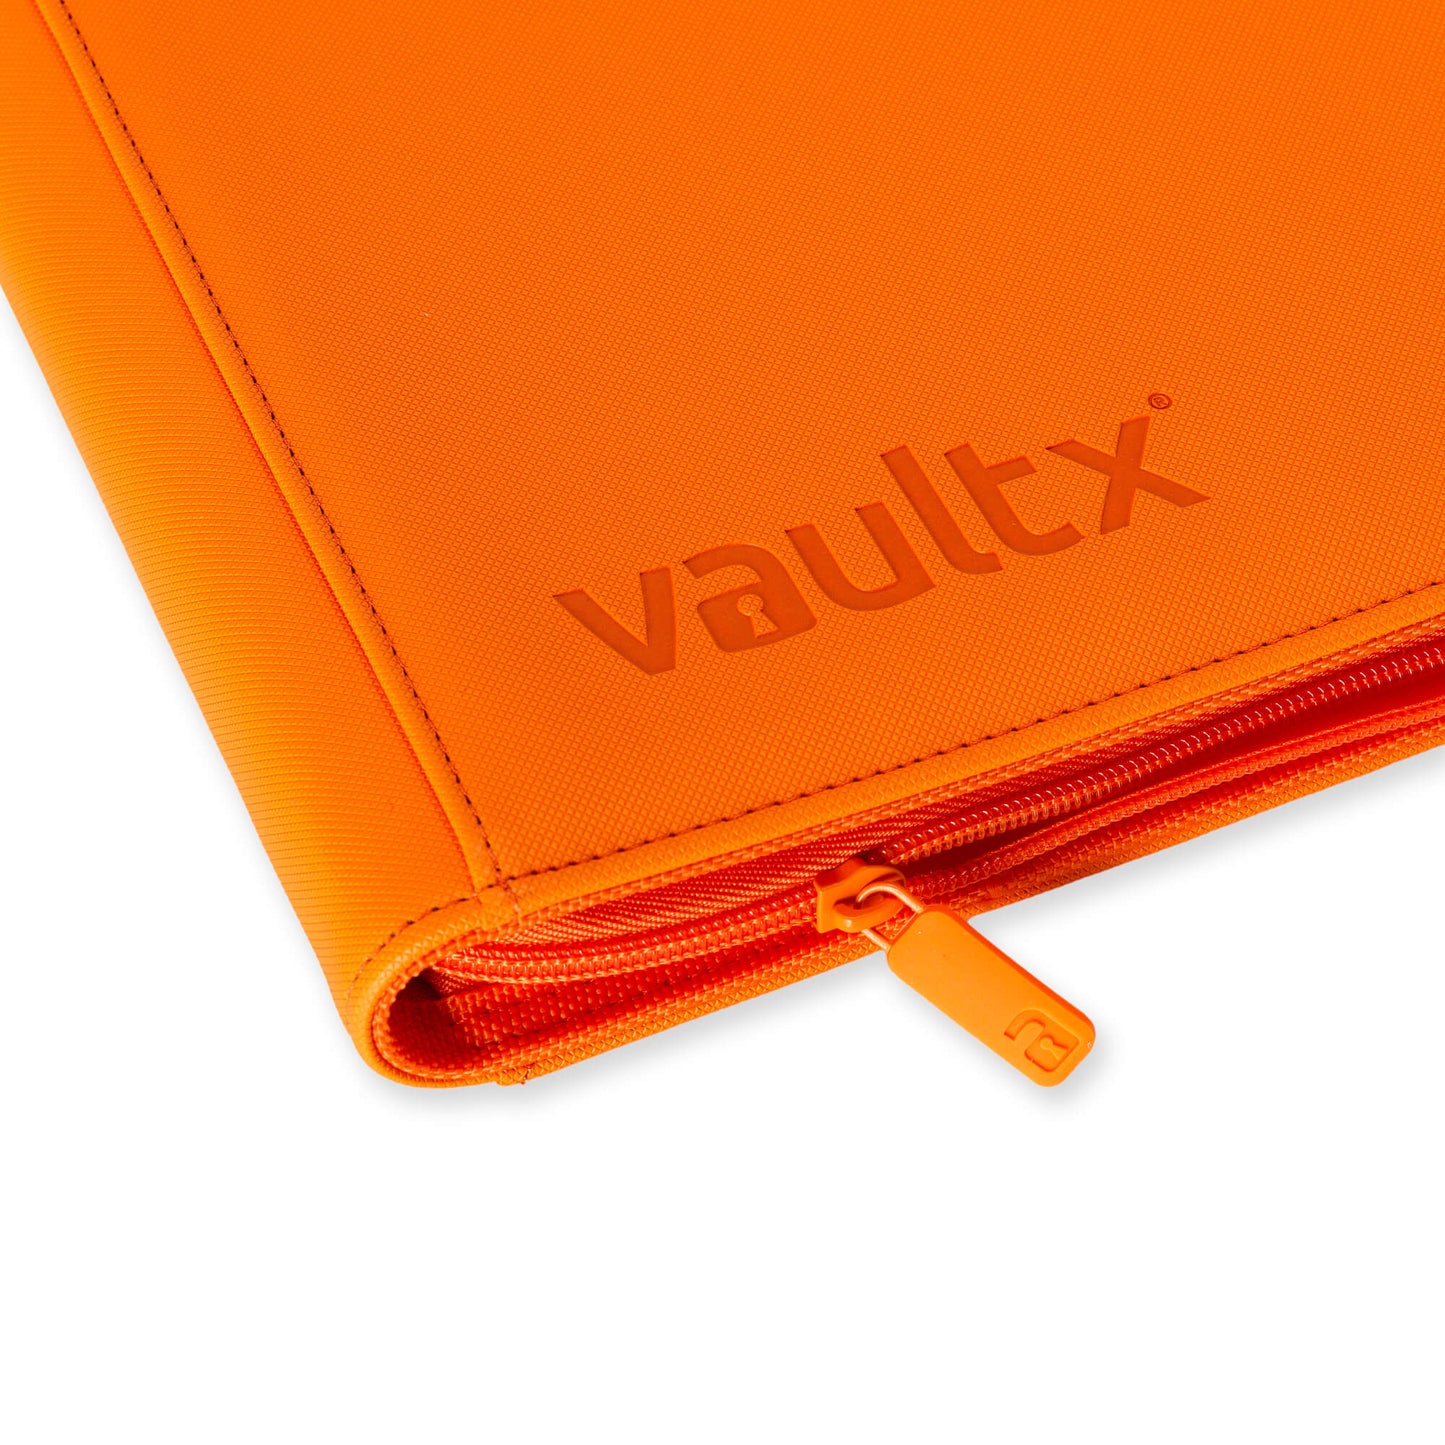 12-Pocket Exo-Tec® Zip Binder Just Orange